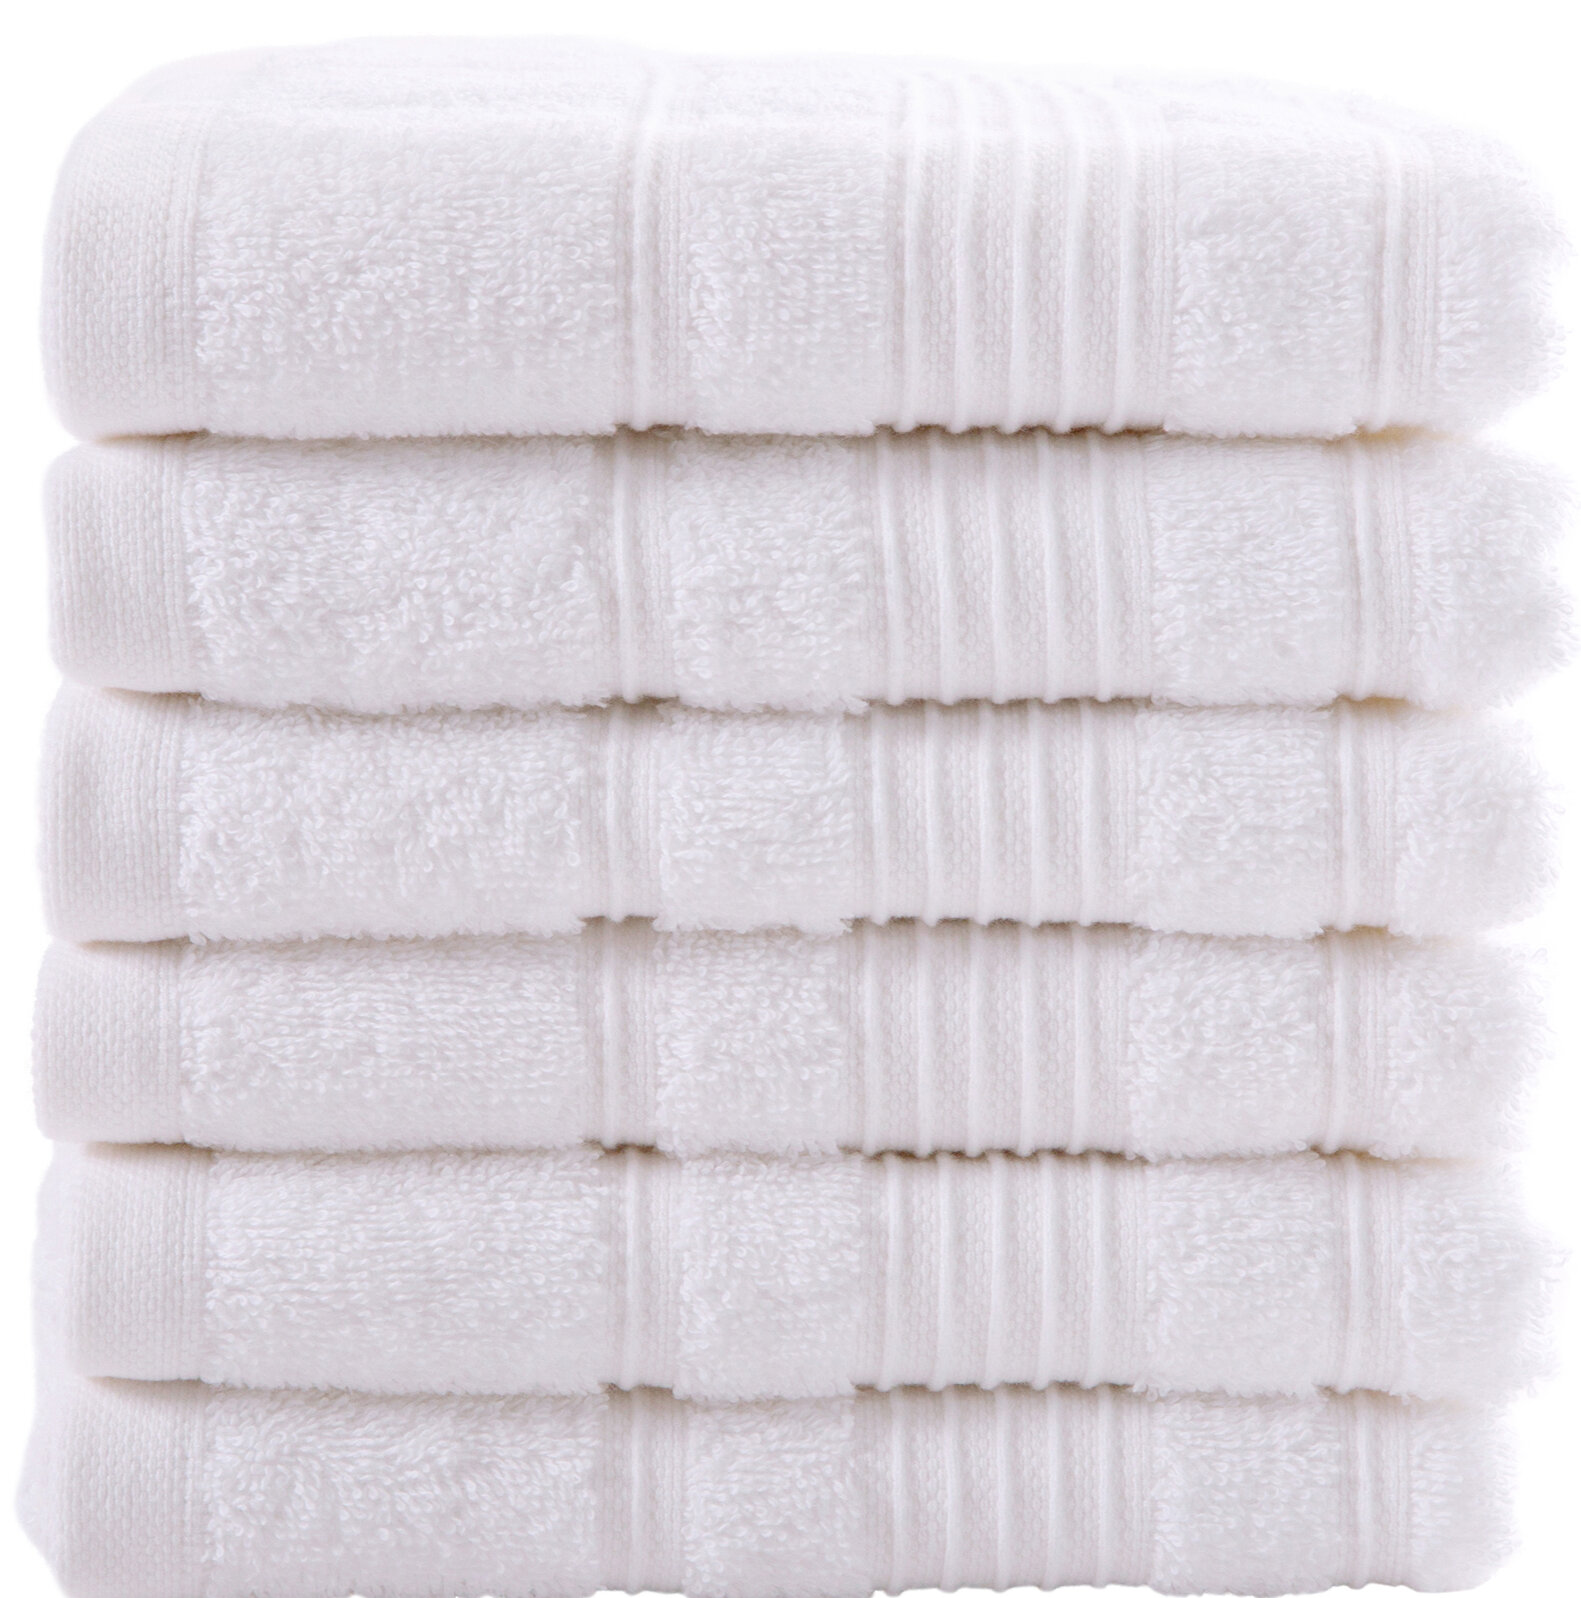 https://assets.wfcdn.com/im/33029864/compr-r85/7128/71284640/lymingt-6-piece-turkish-cotton-hand-towel-set.jpg